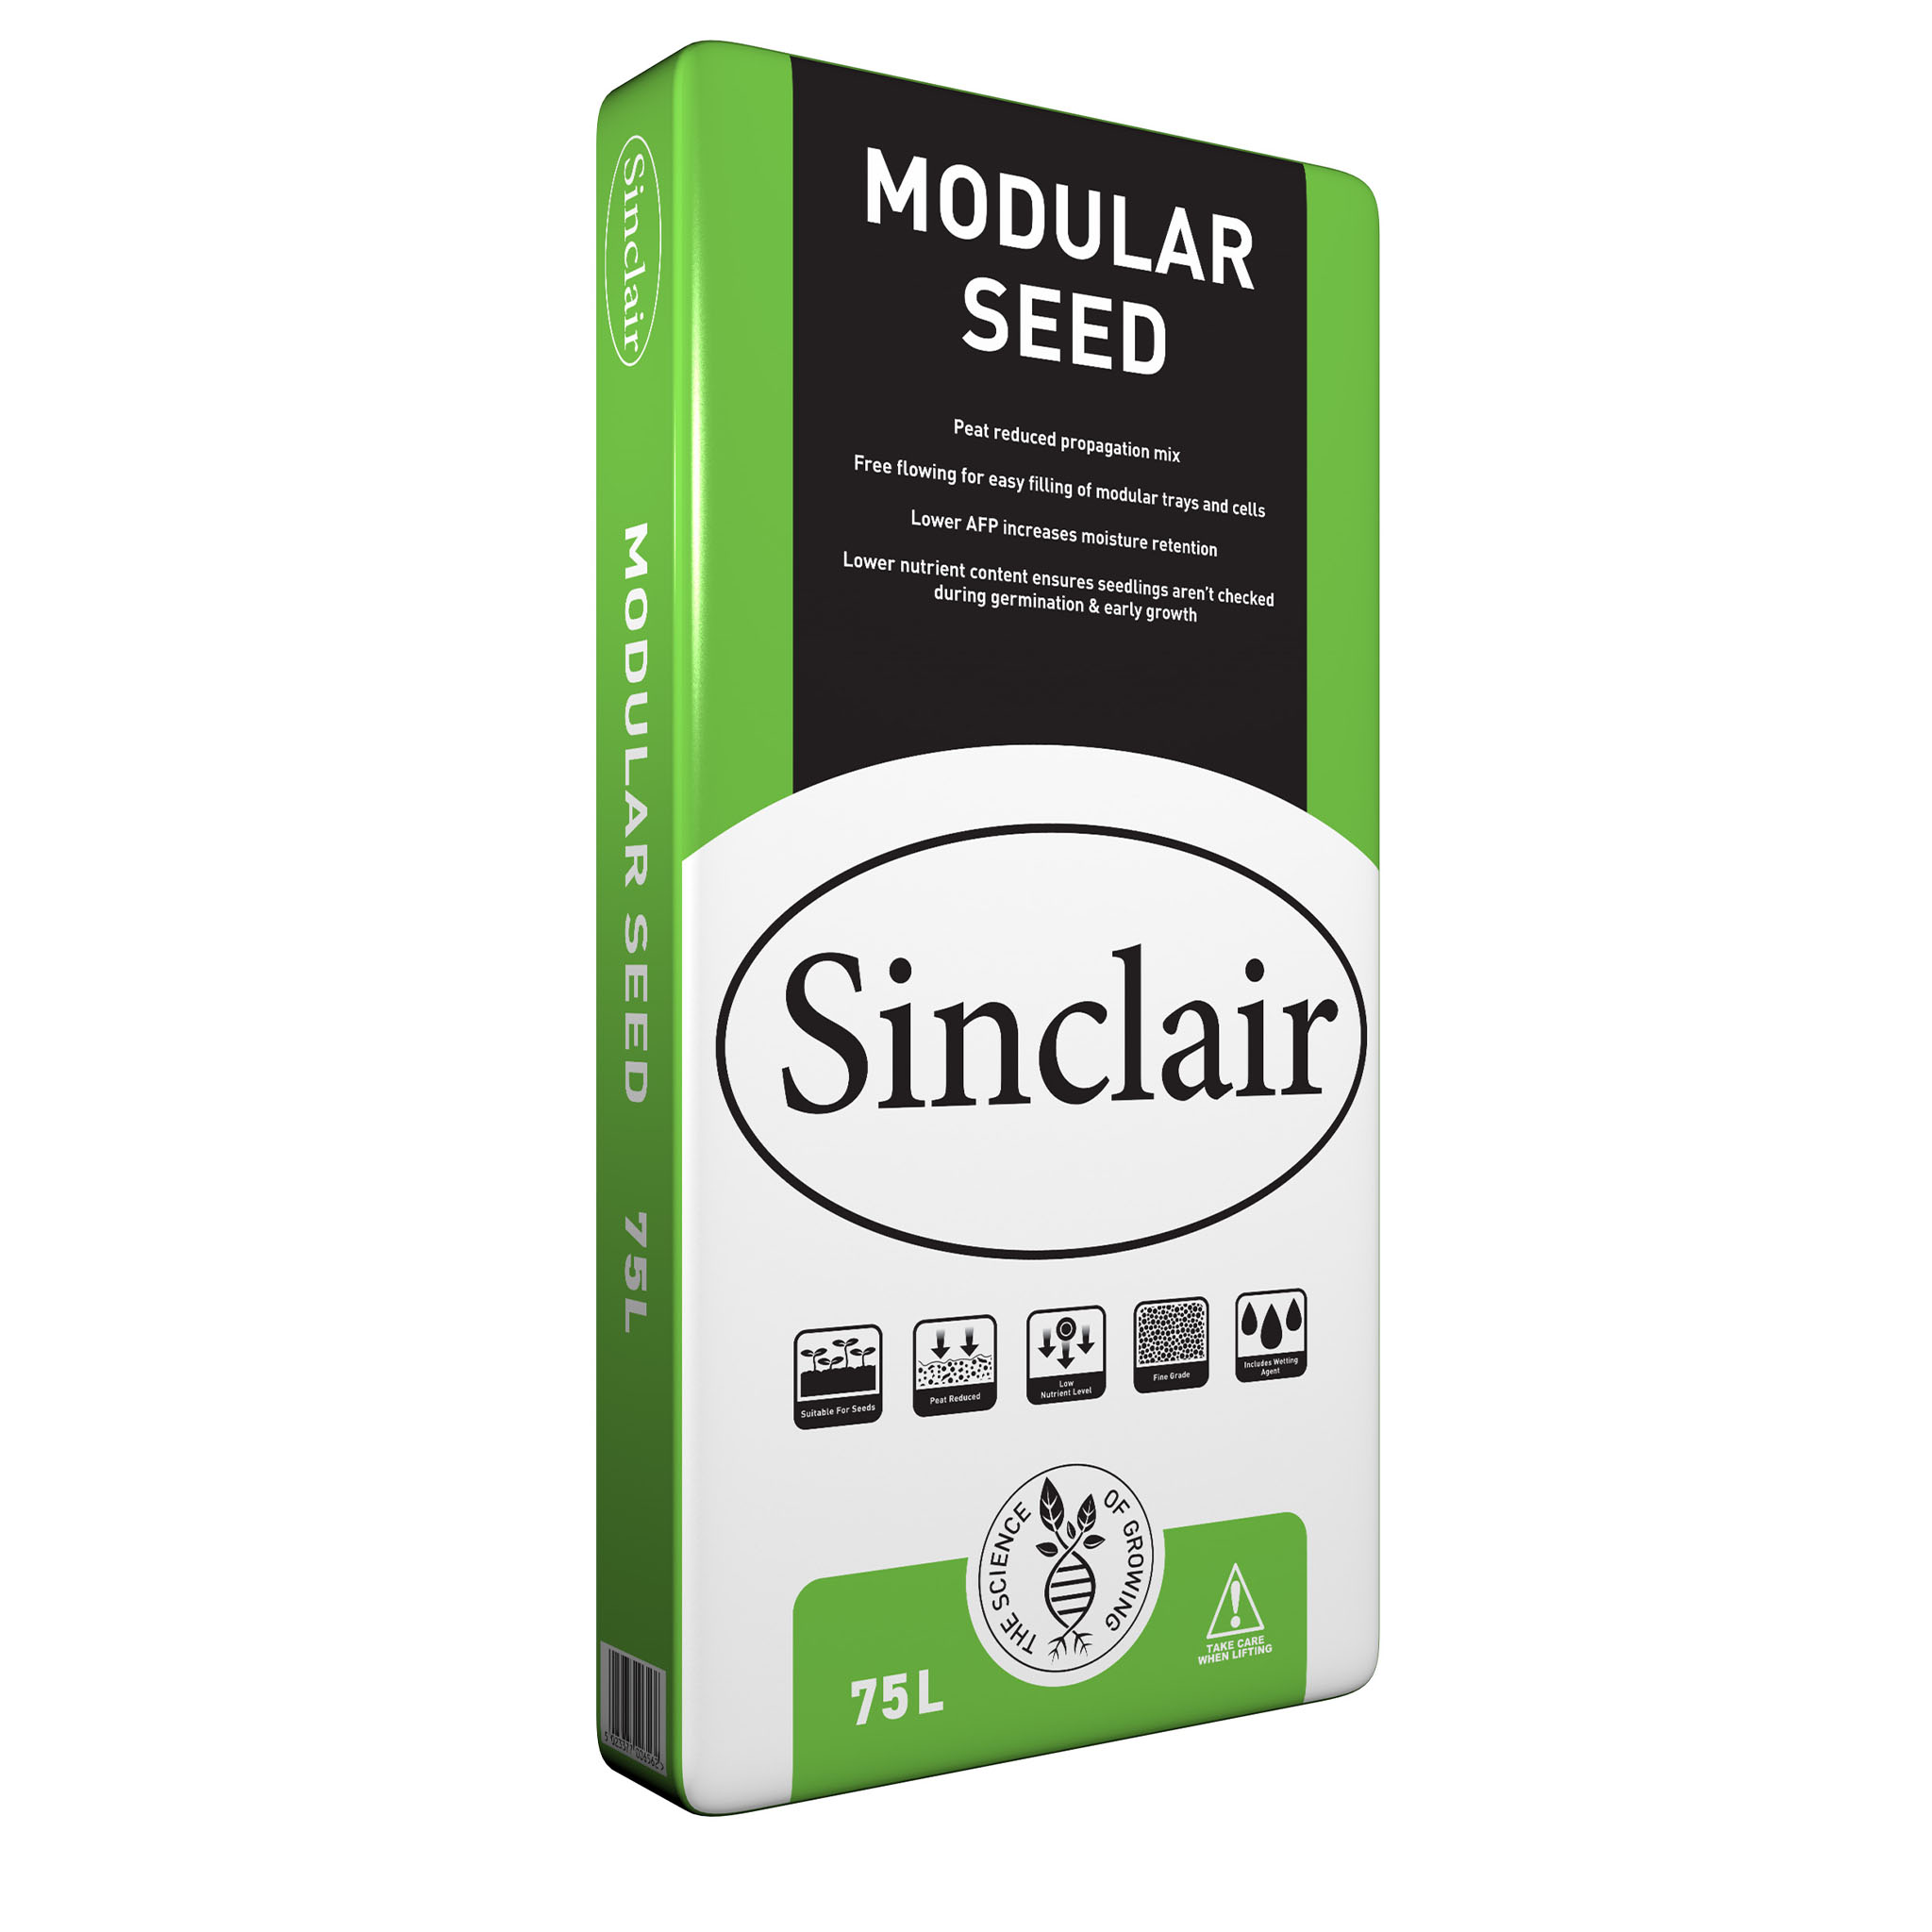 Modular Seed